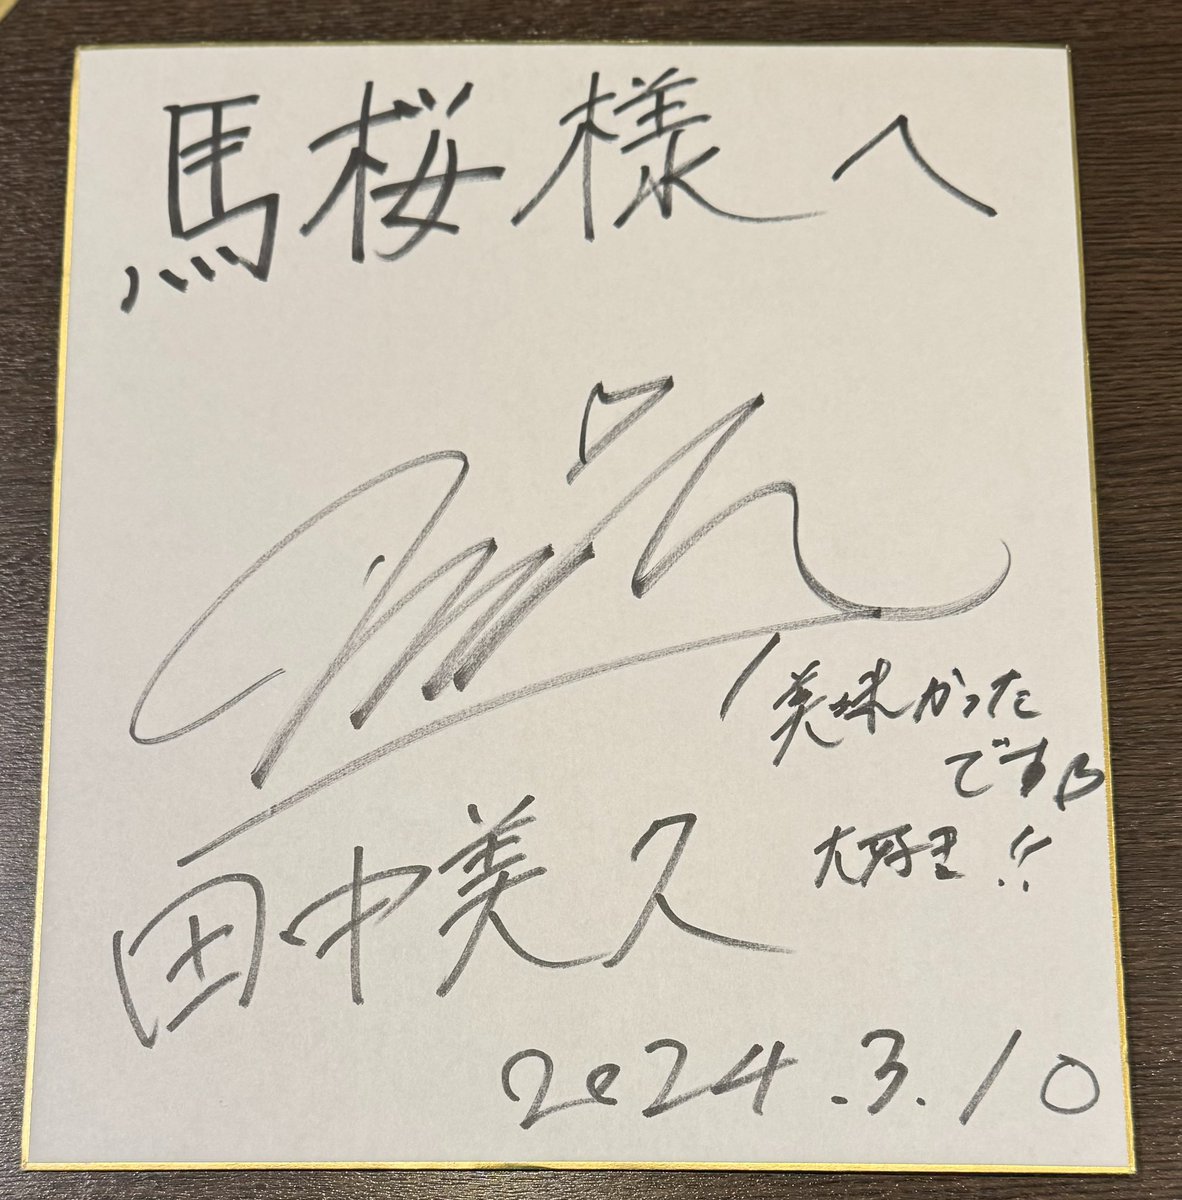 昨日、HKT48の卒業コンサートを開催された田中美久さんがご来店されました^ ^
地元での馬刺しを堪能されました♪

卒業おめでとうございます！
今後の益々のご活躍を従業員一同、応援しております！！！

サインの投稿、快くご許可いただきありがとうございます♪

#田中美久
#田中美久卒業コンサート